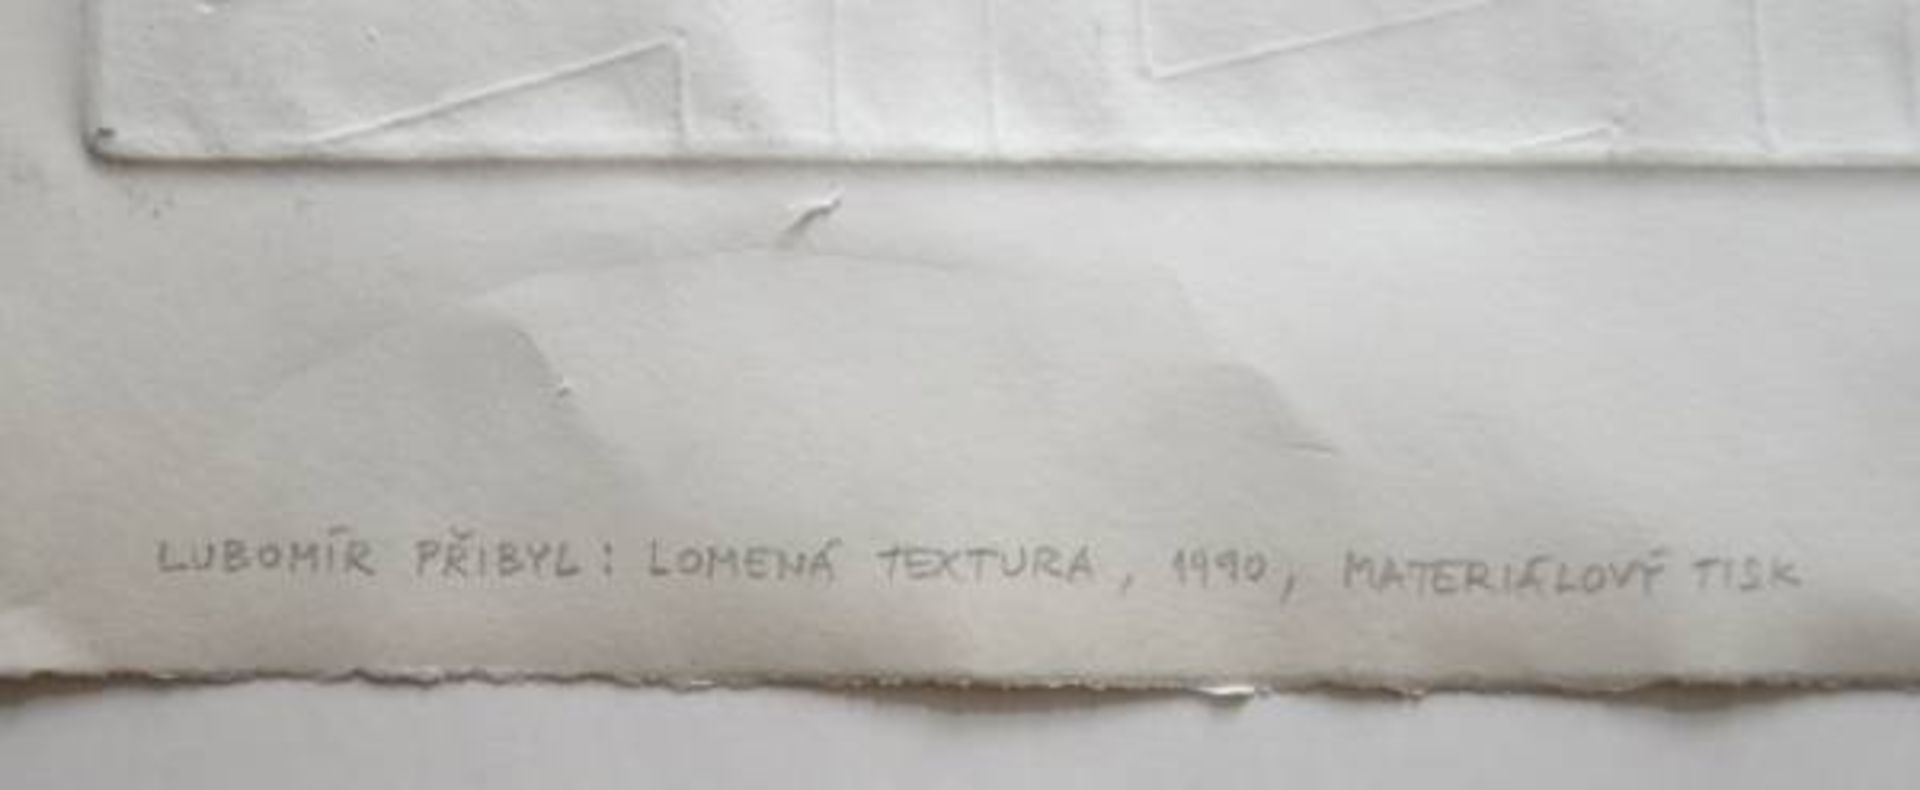 PIIBYL Lubomír (1937) "Lomena textura", Radierung, rechts unten signiert und (19)80 datiert,PIIBYL - Image 3 of 5